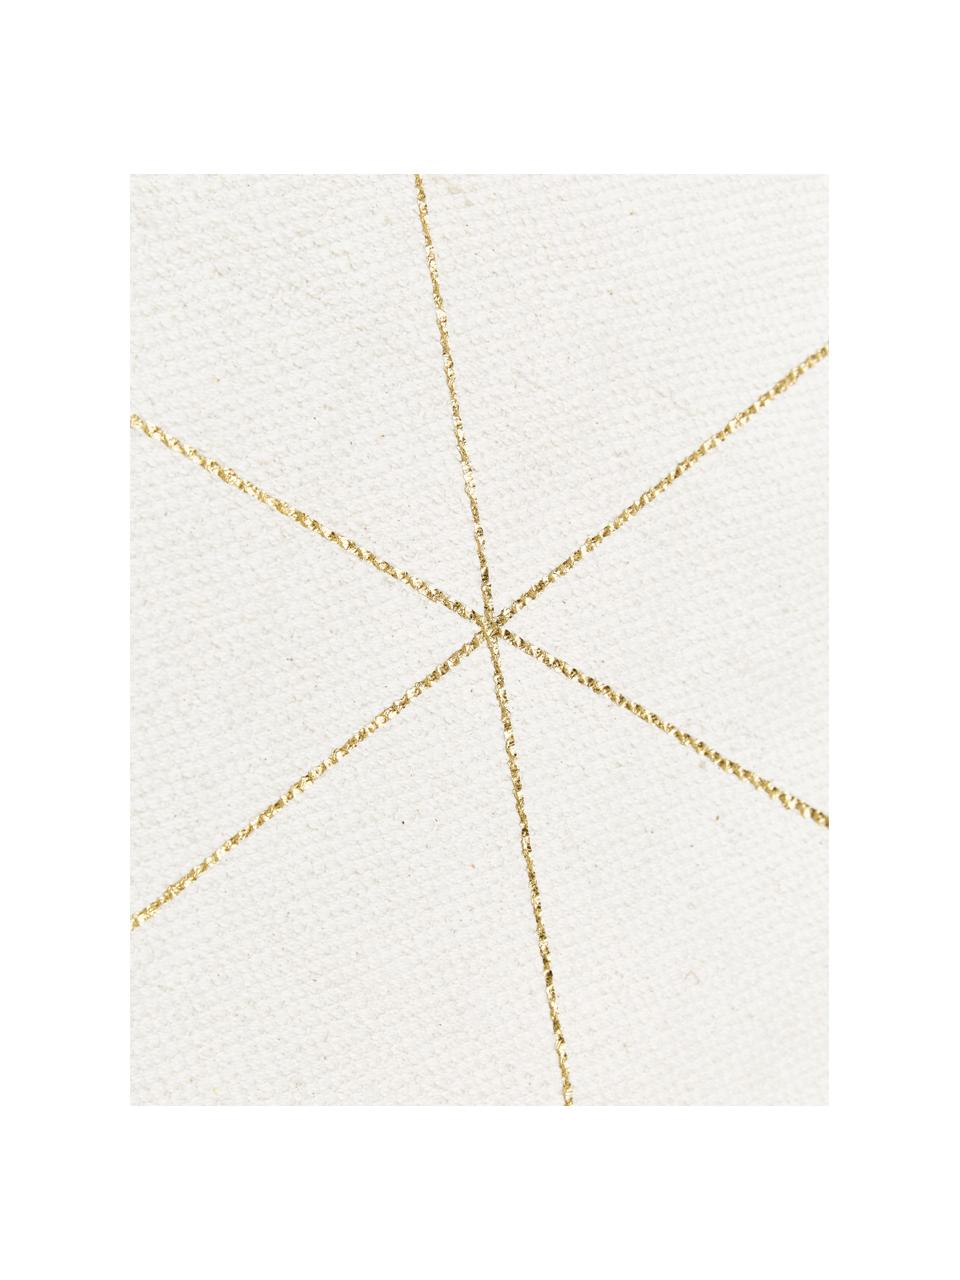 Tappeto in cotone beige/dorato tessuto piatto con frange Yena, Beige, oro, Larg. 70 x Lung. 140 cm (taglia XS)